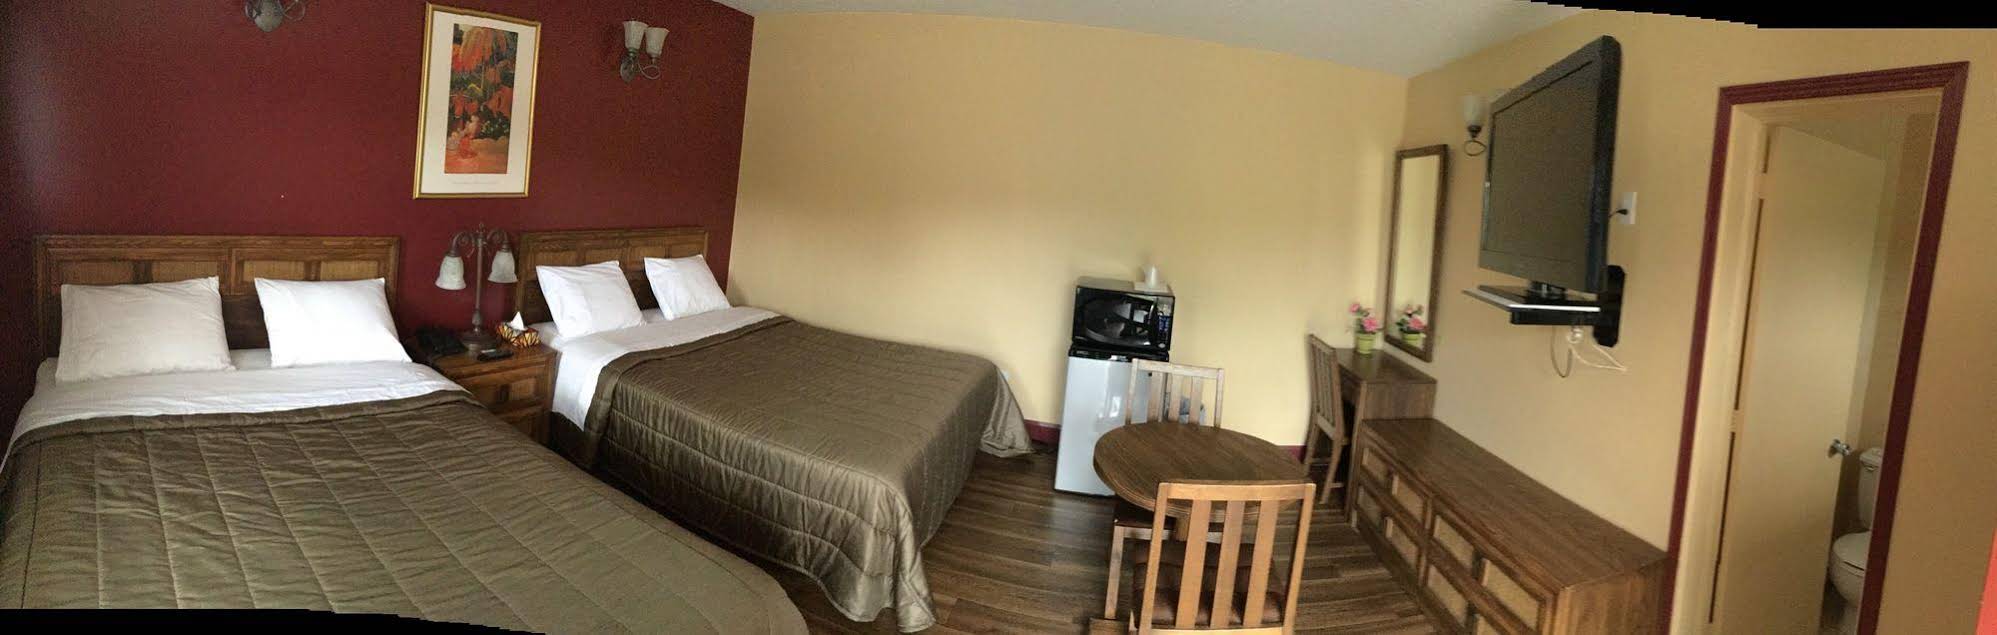 Hotel Motel Hospitalite